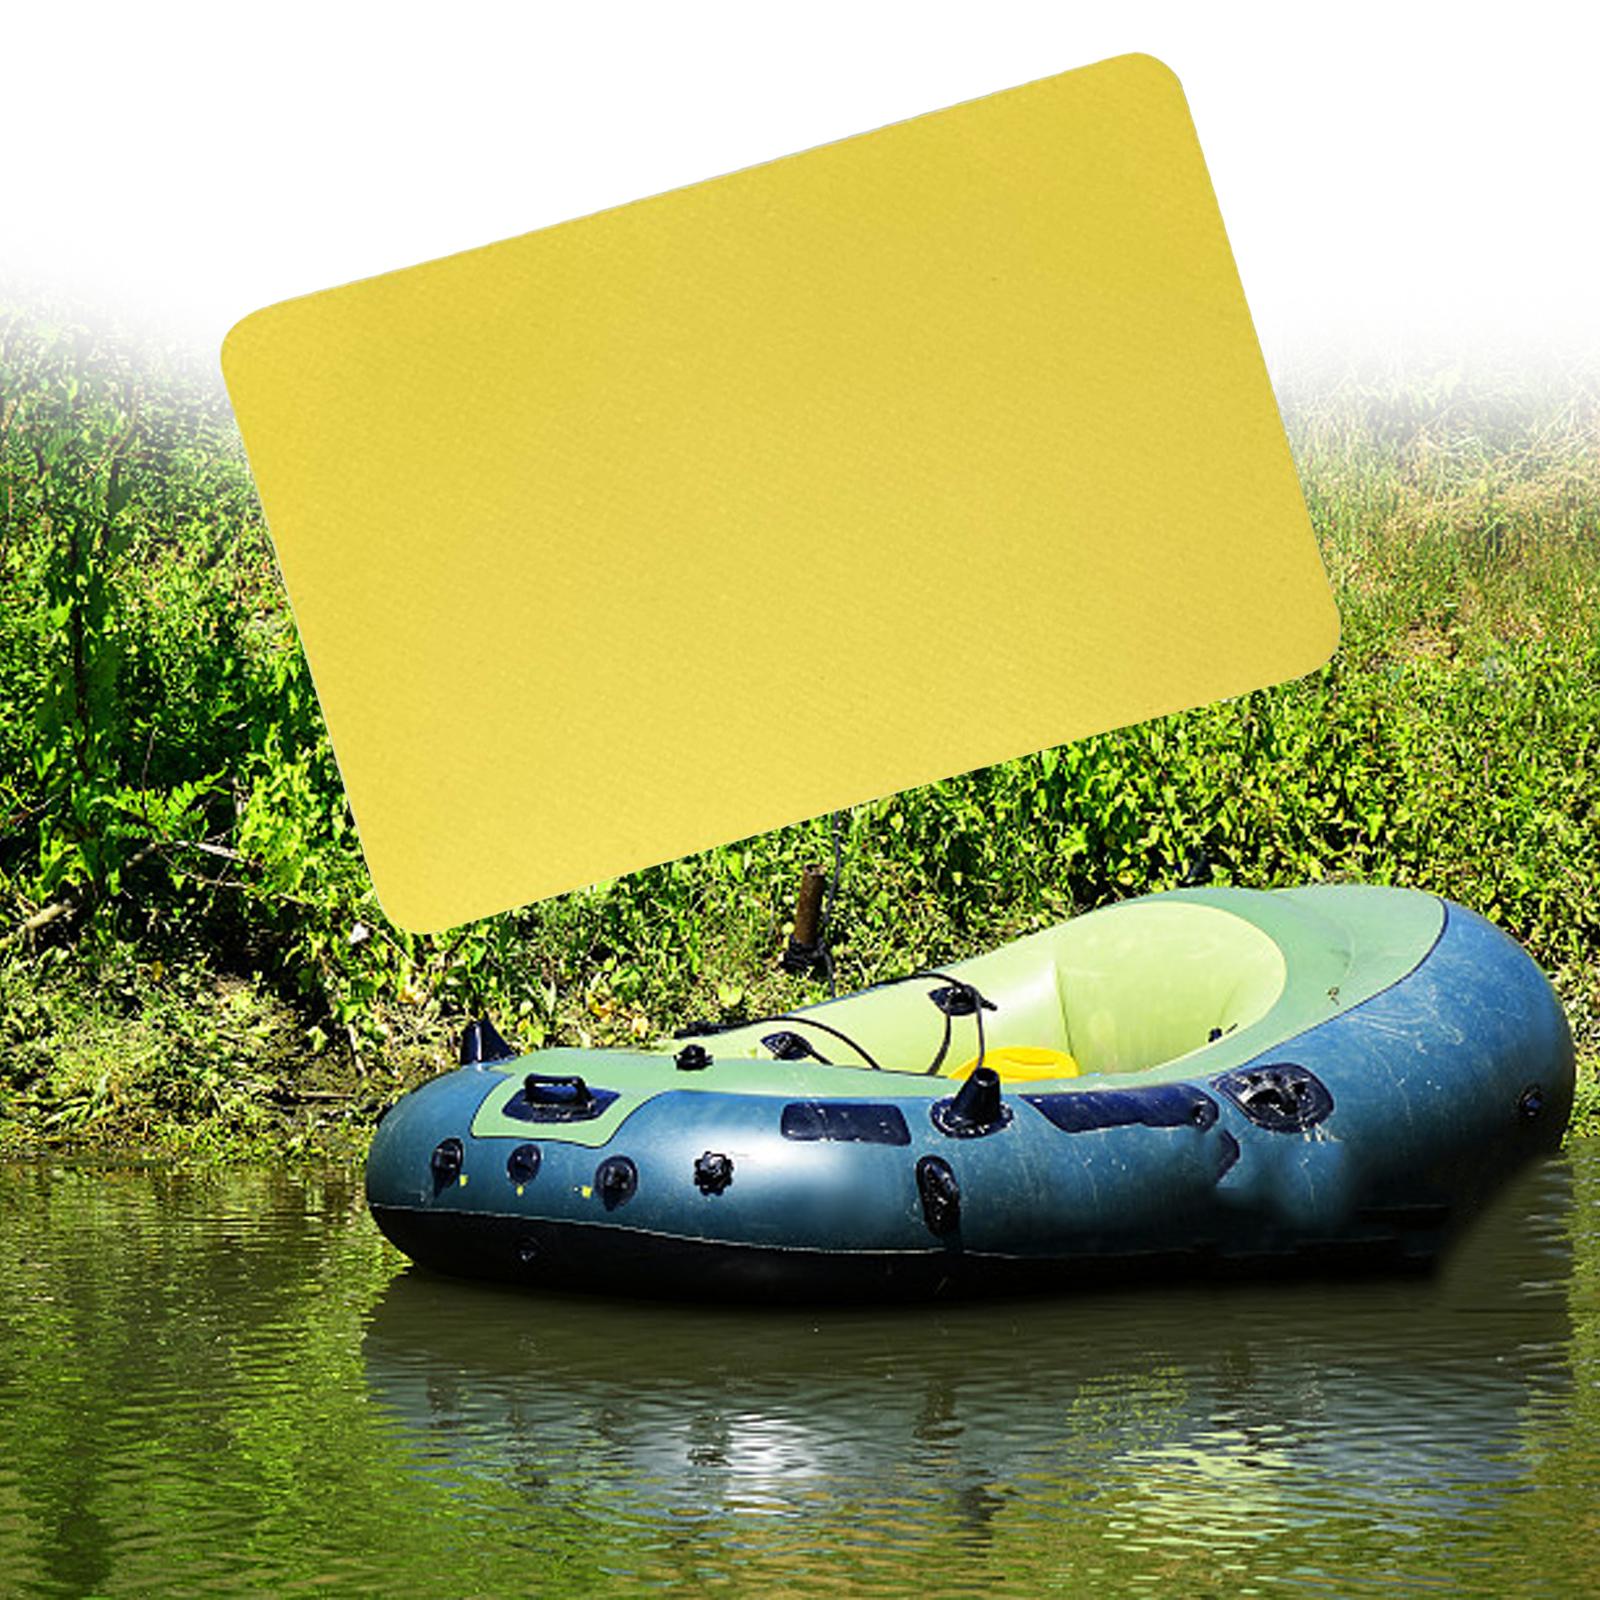 Inflatable Boat Repair Patch Self Adhesive Kayak Patches Replacement Boat Repair